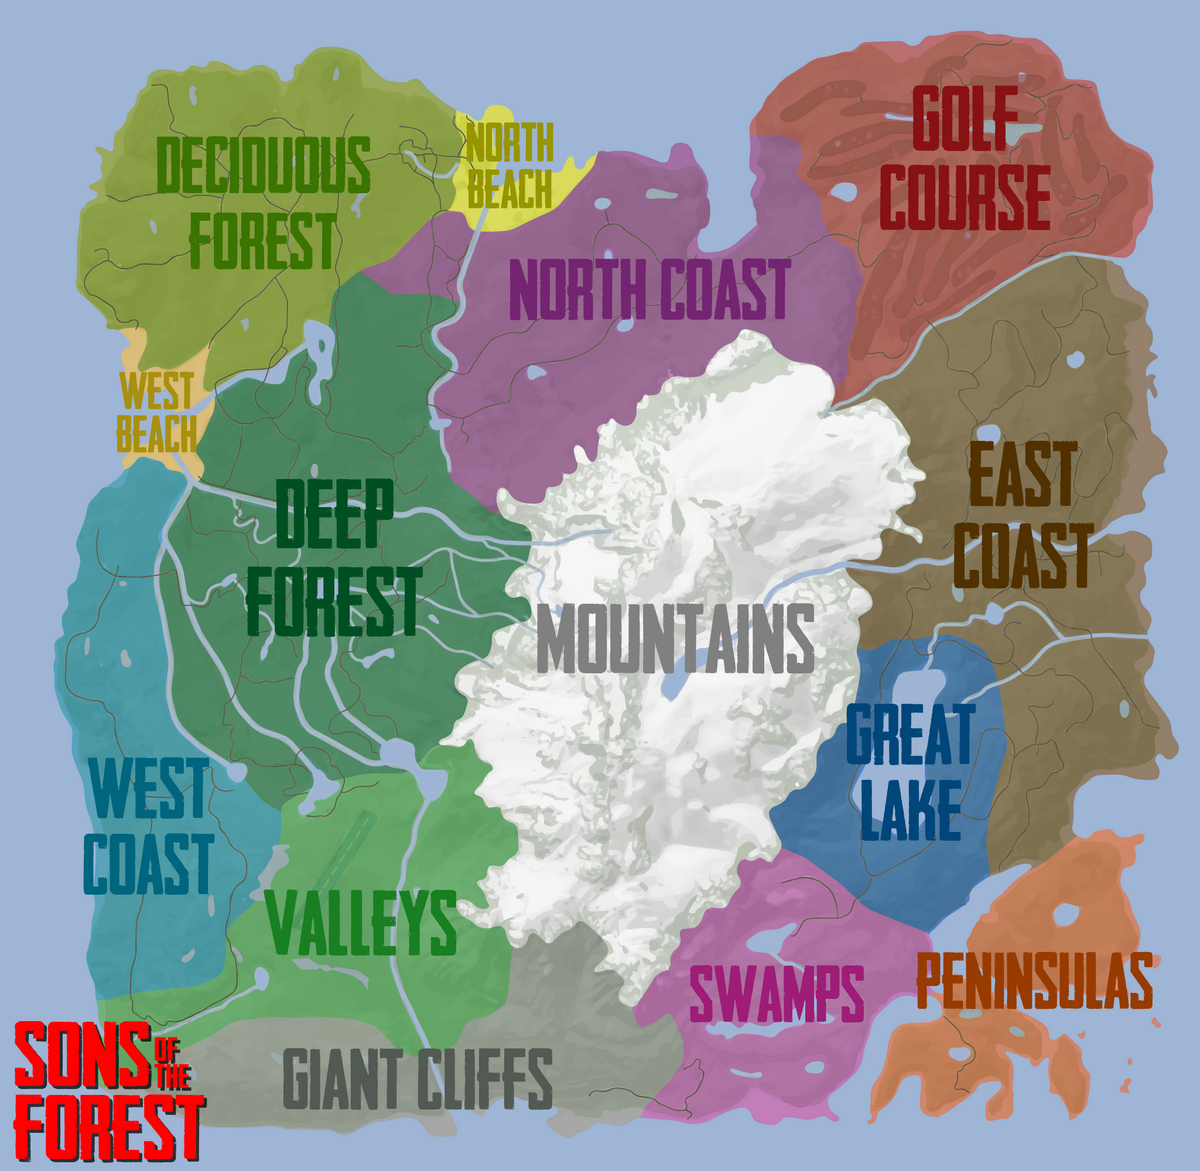 Sons of the Forest Map - Sons Of The Forest Map - Sticker